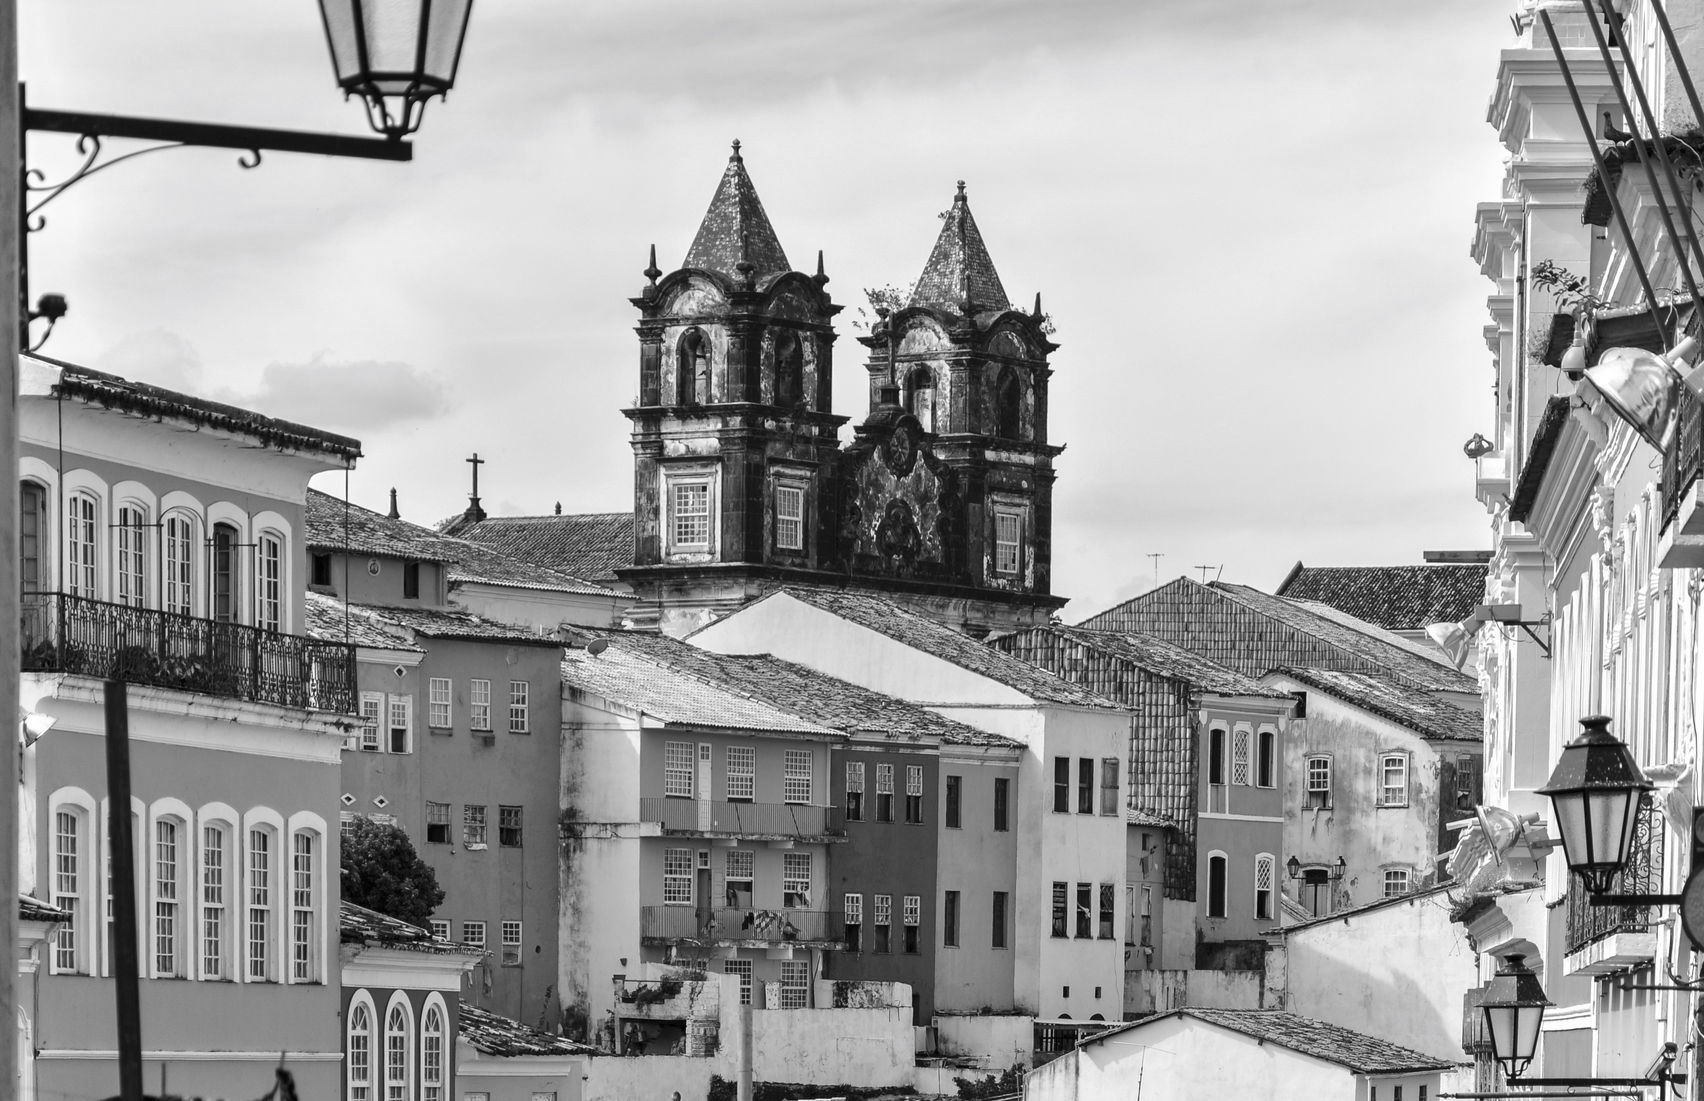 Vue de clocher dans le quartier du Pelourinho à Salvador de Bahia.